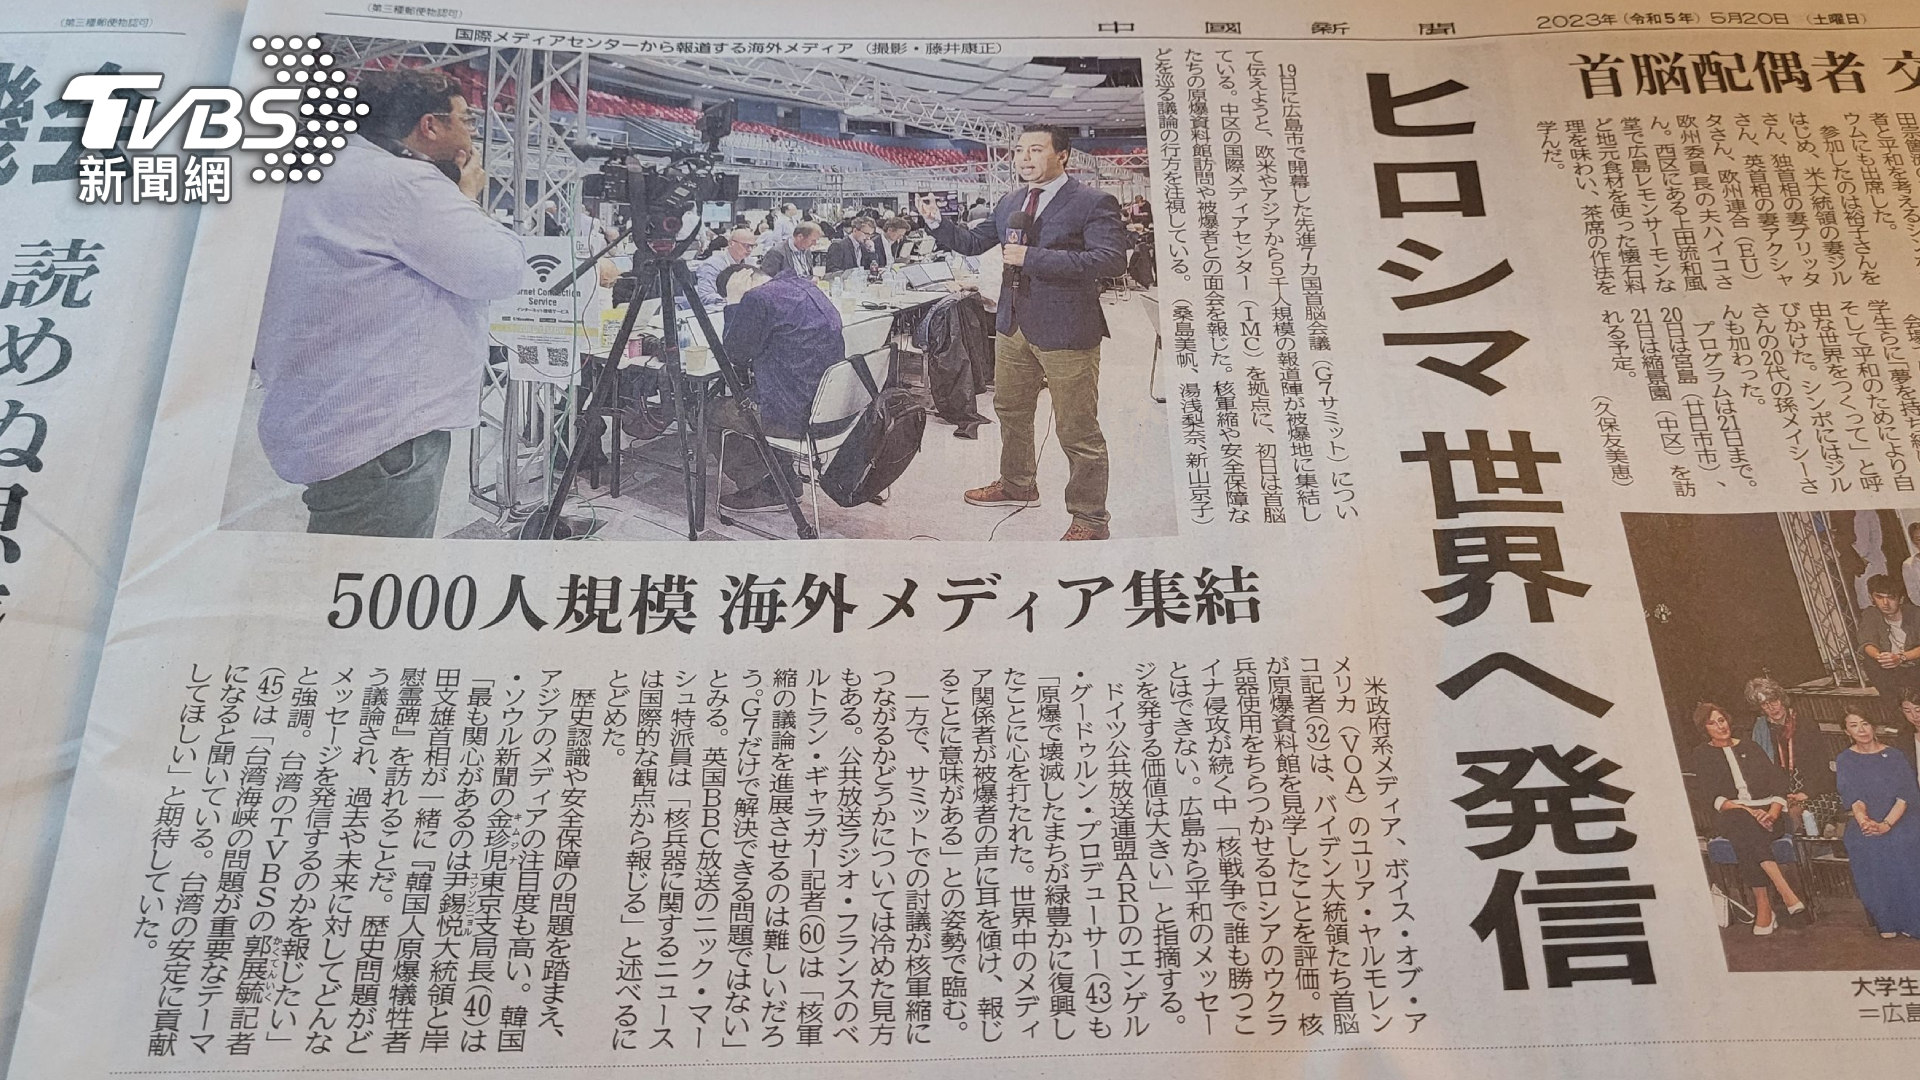 廣島地方媒體《中國新聞社》以全球媒體聚集廣島報導G7，當中也採訪TVBS針對台海議題提出觀點看法（圖/TVBS)